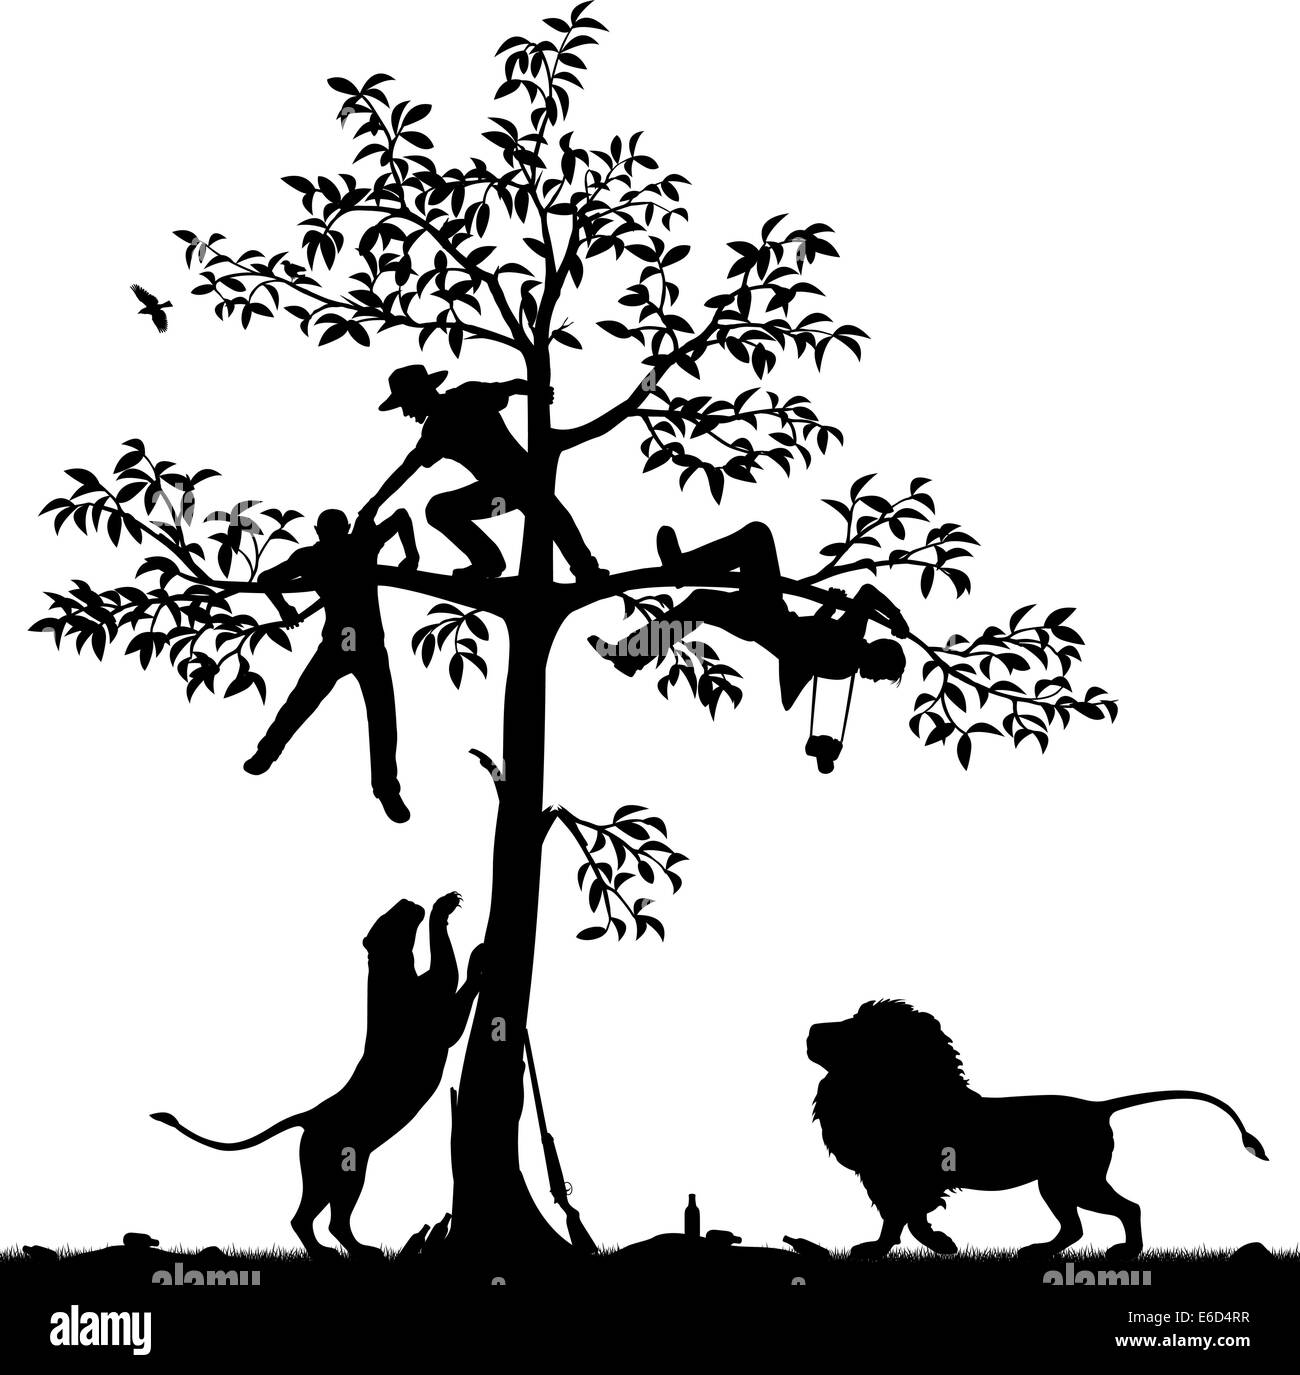 Vettore modificabile silhouette di tre uomini inseguiti in un albero da una coppia di leoni con tutti i dati come oggetti separati Illustrazione Vettoriale